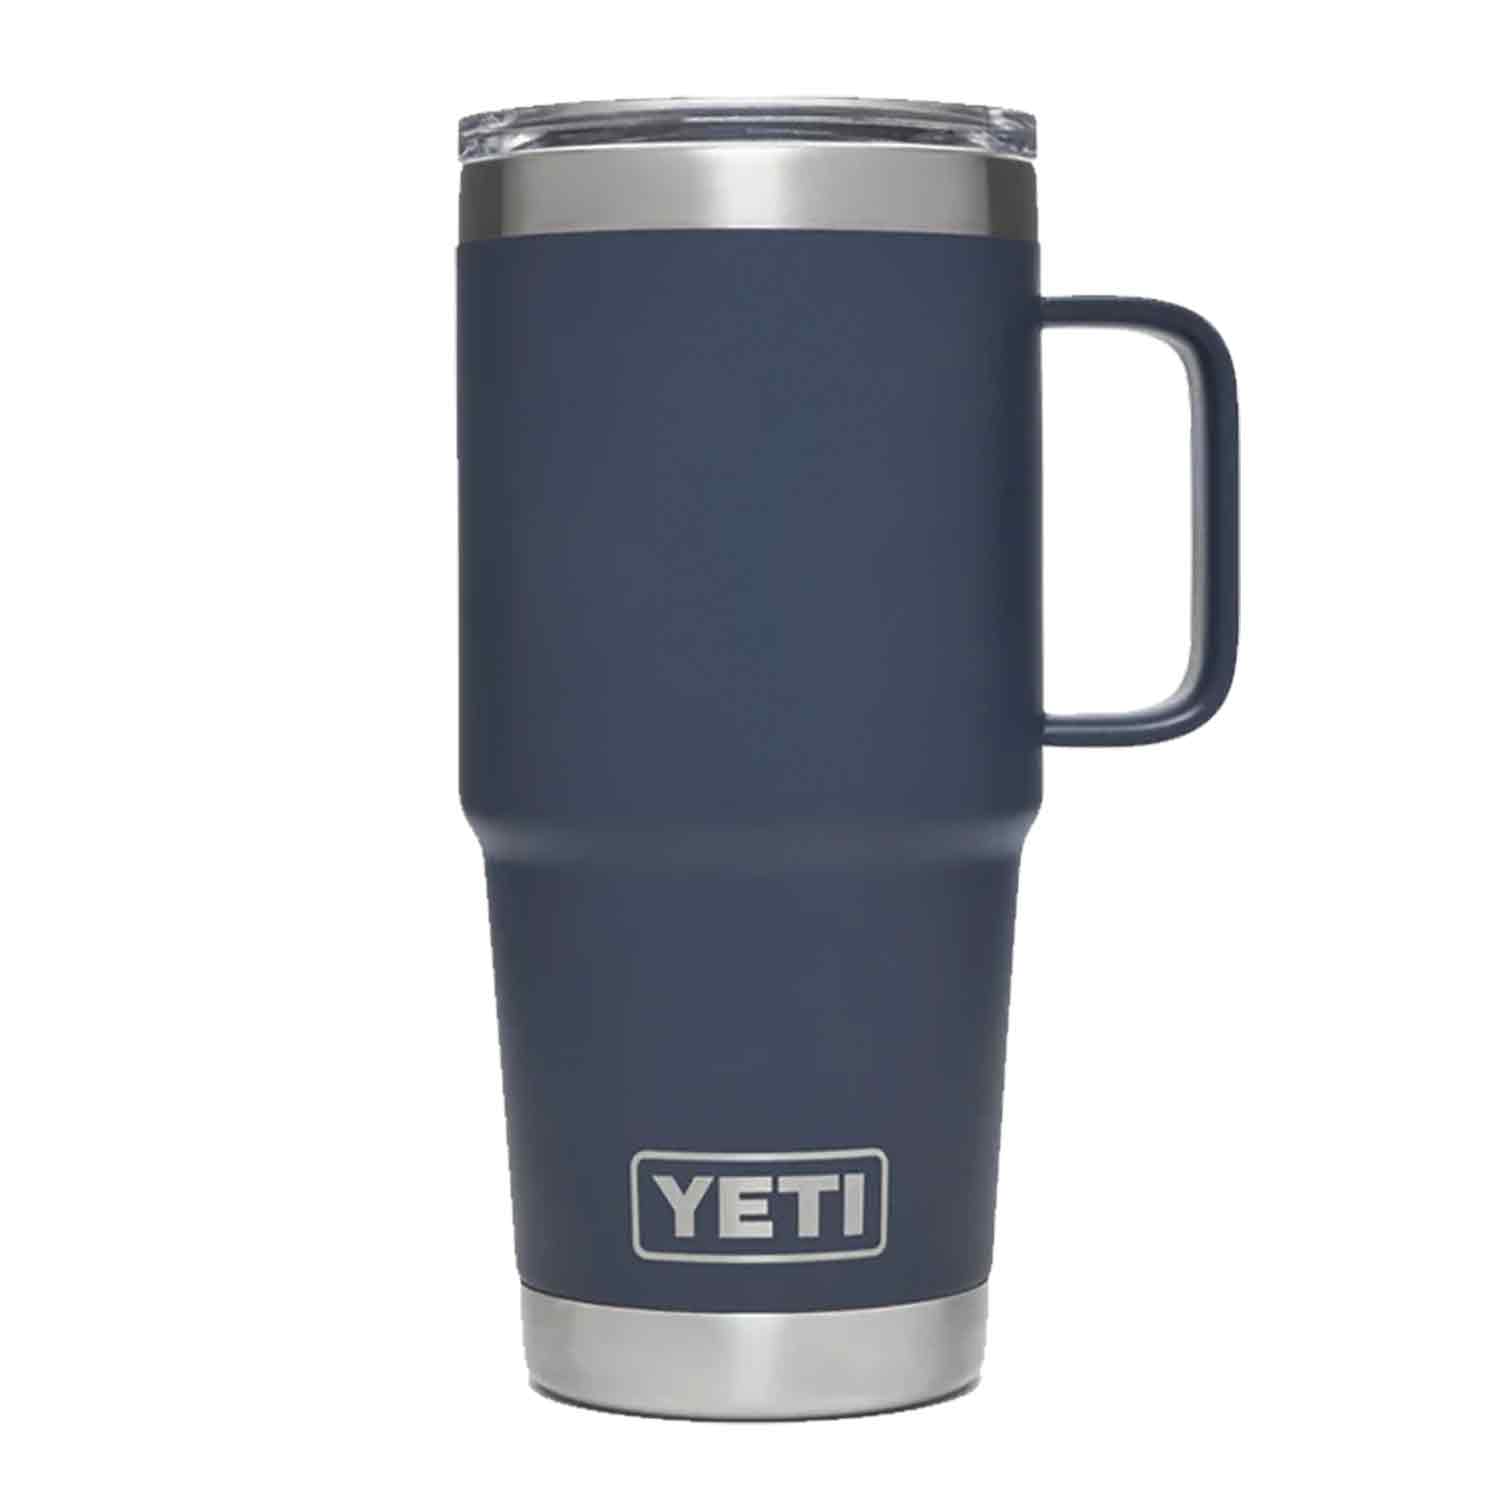 Marketing YETI Rambler Tall Mugs with Handle (24 Oz.), Travel Mugs